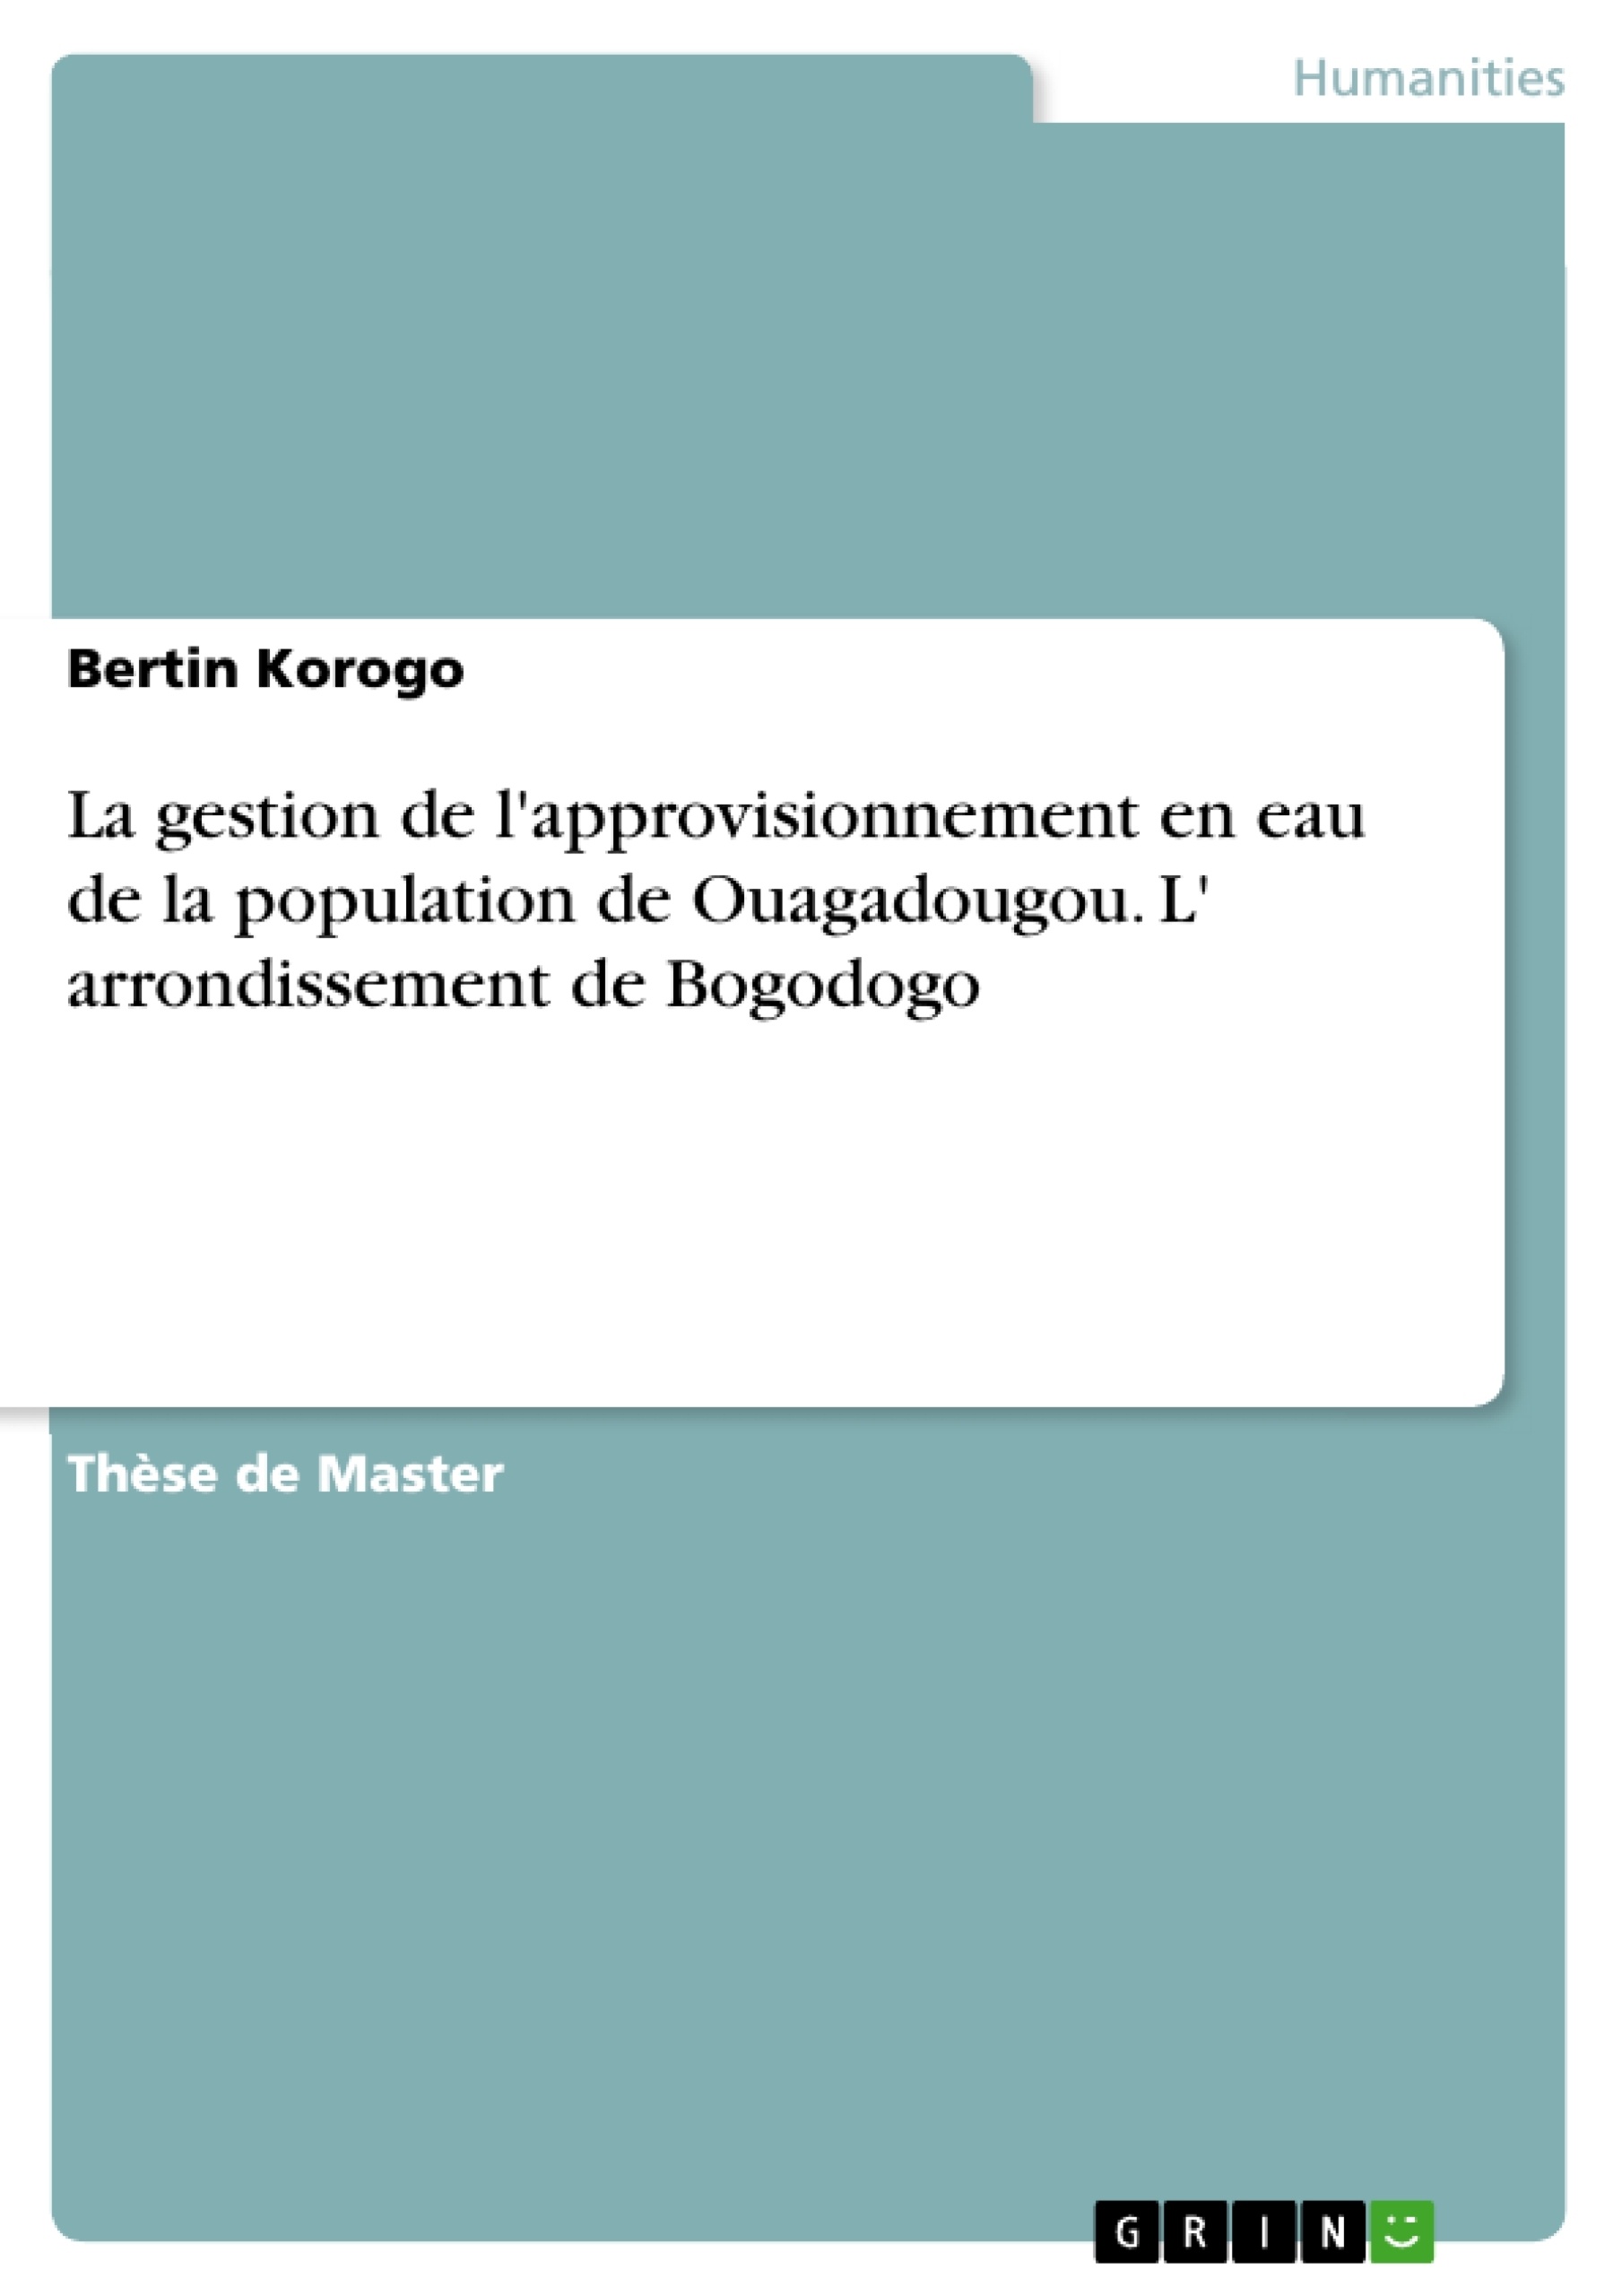 Titre: La gestion de l'approvisionnement en eau de la population de Ouagadougou. L' arrondissement de Bogodogo